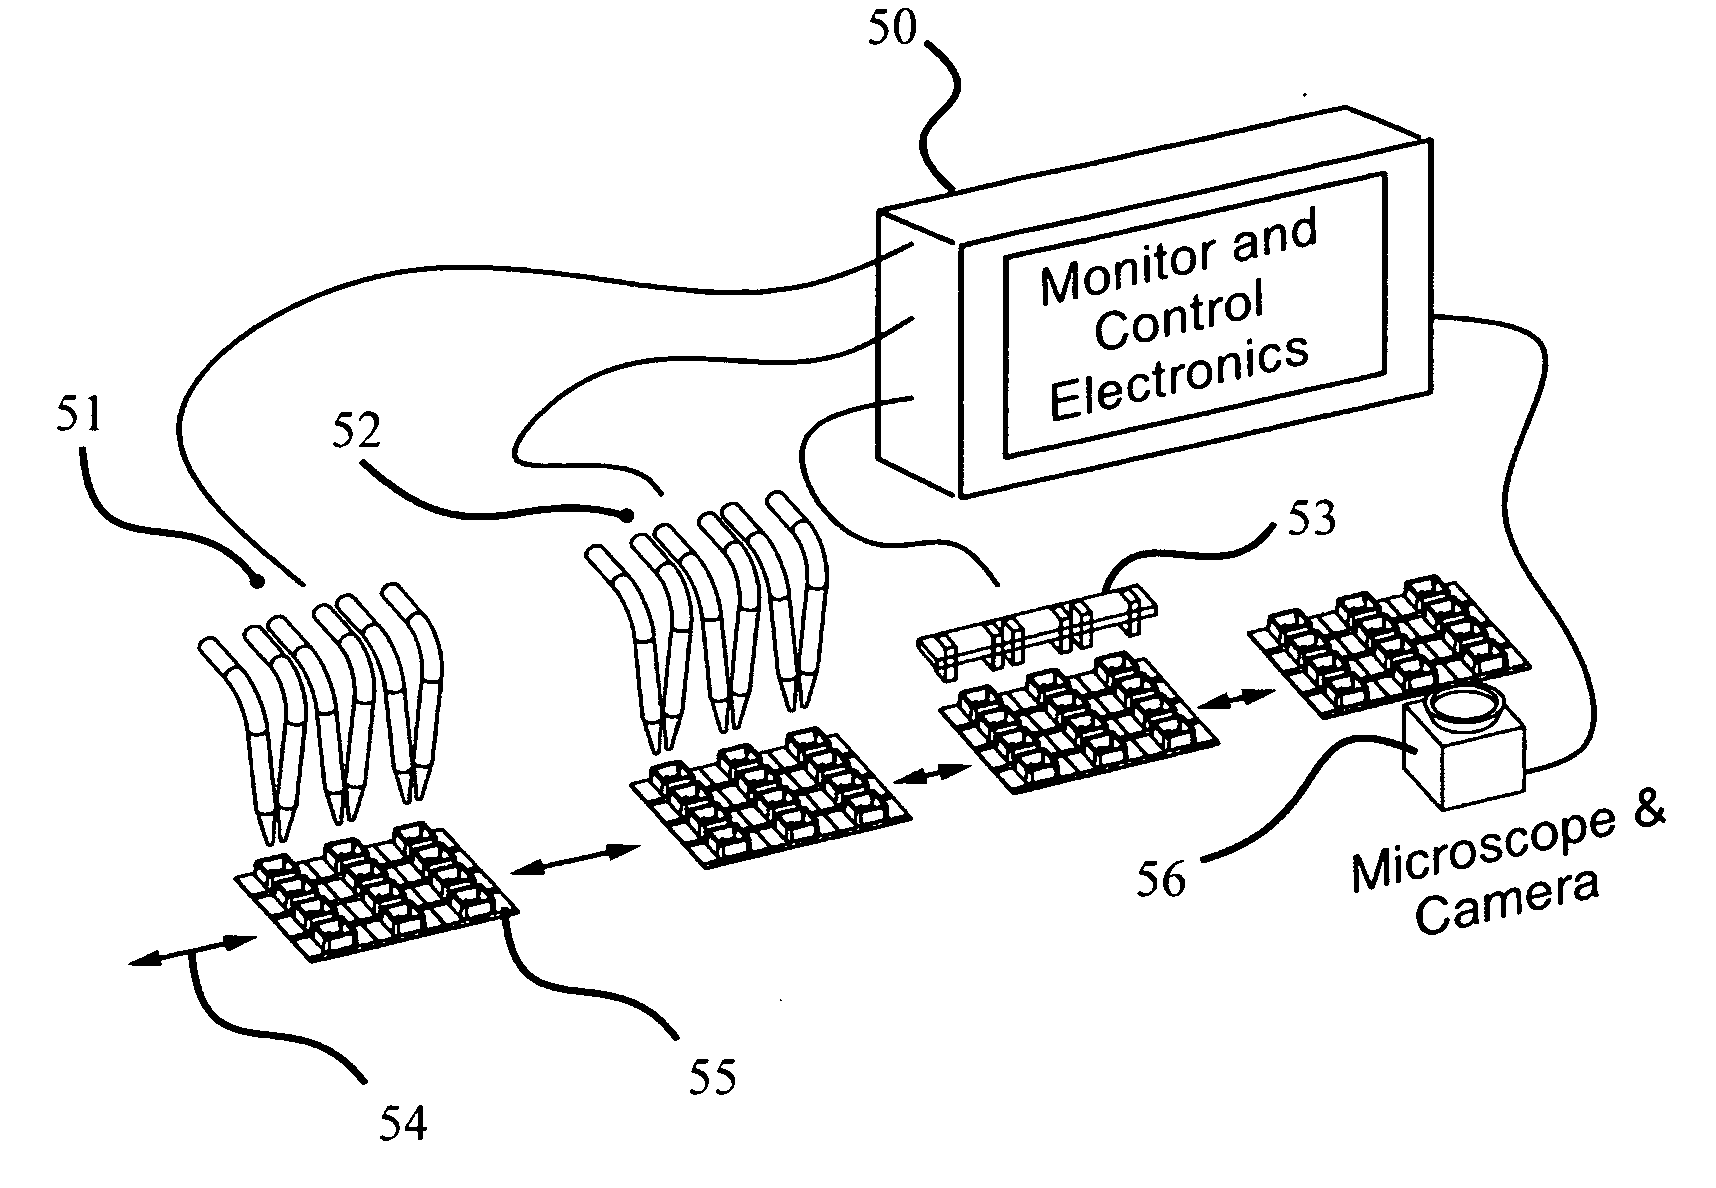 Planar electroporation apparatus and method